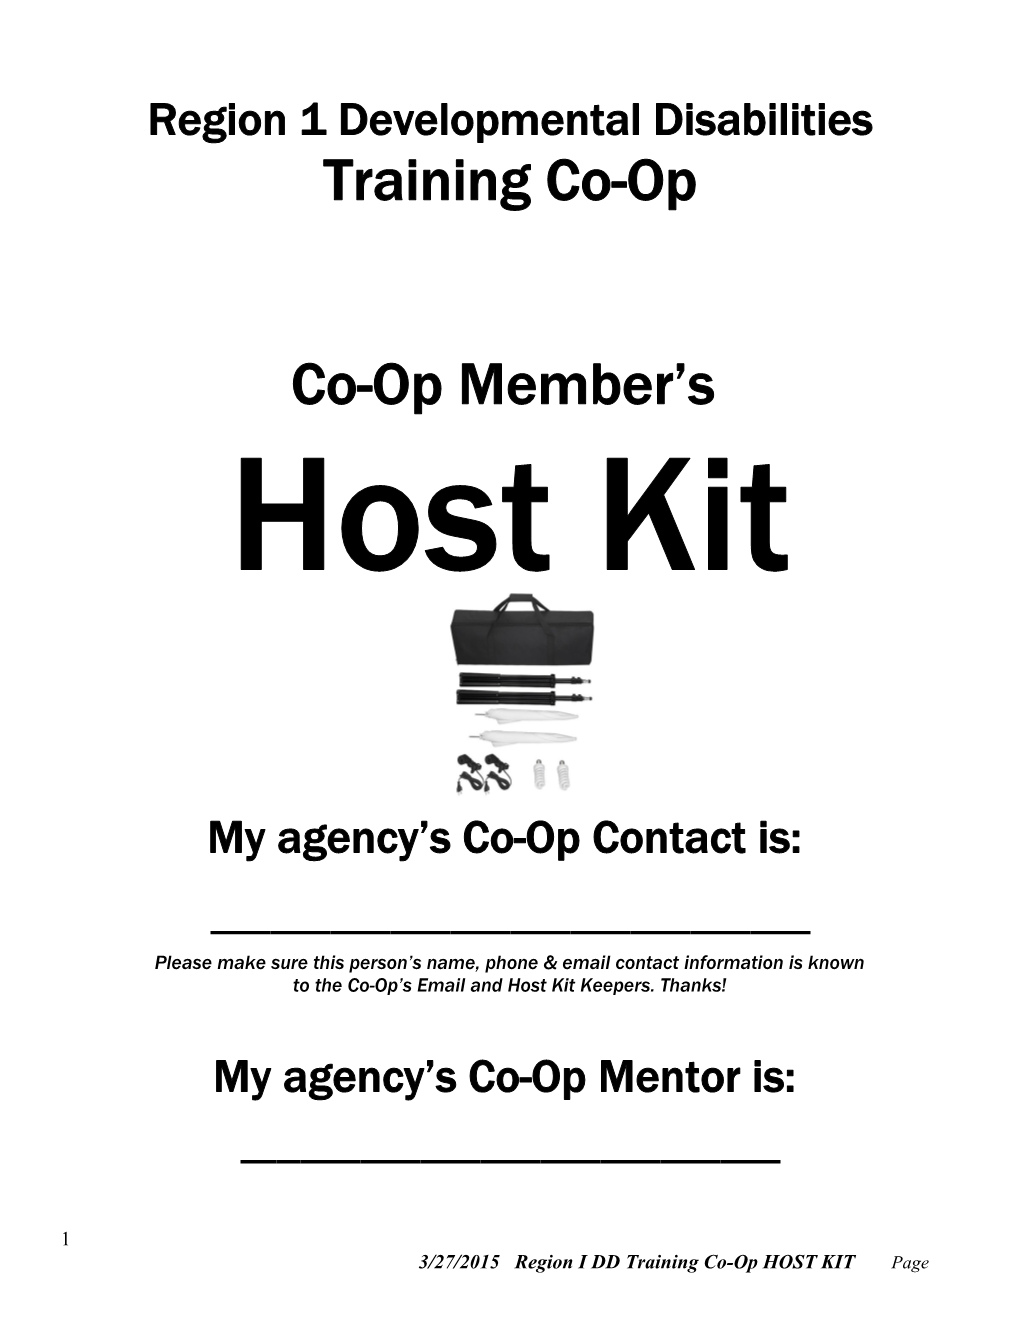 Region 1 DD Training Co-Op Host Kit